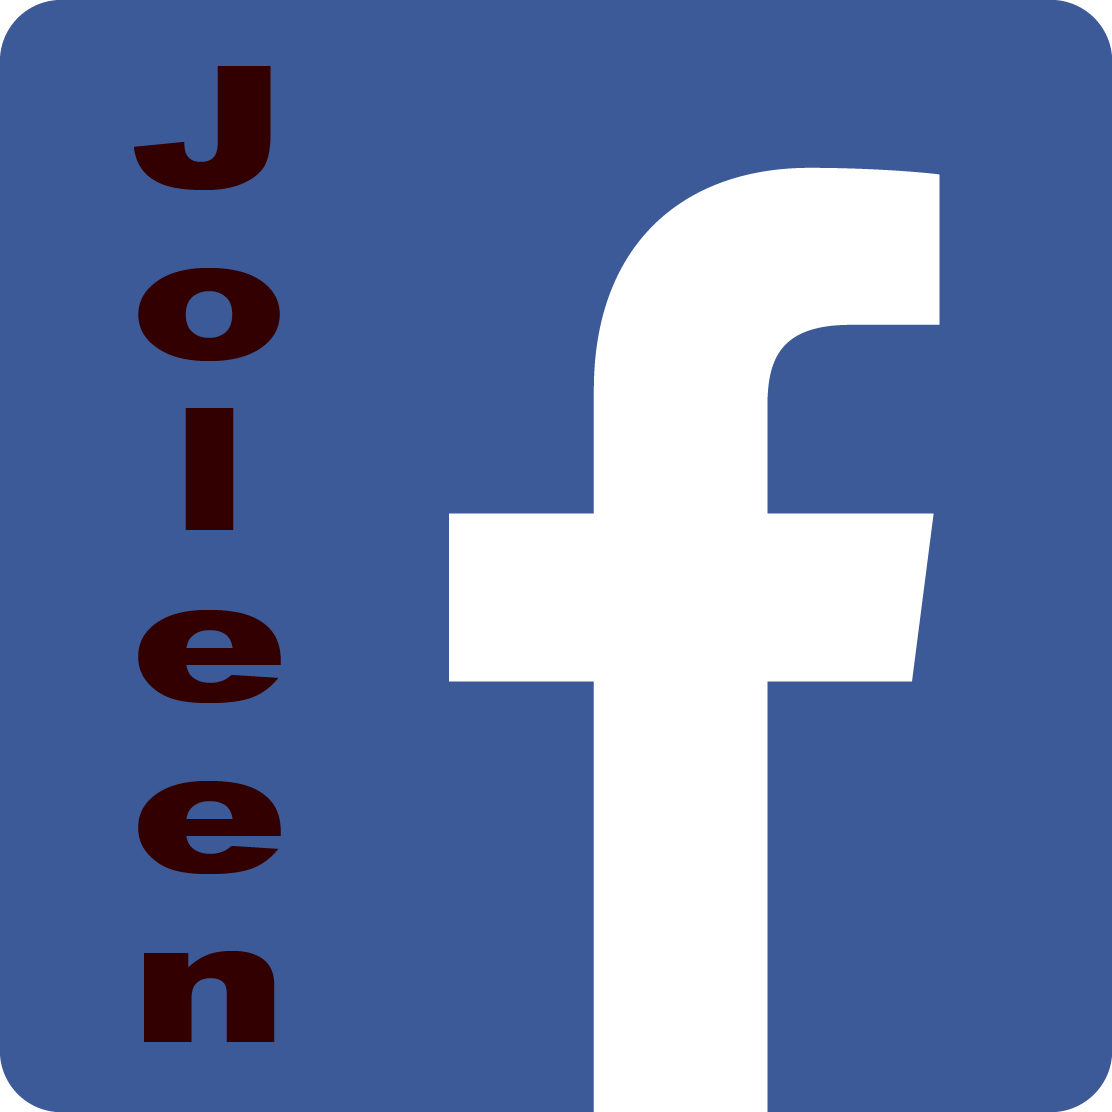 Joleen's Facebook